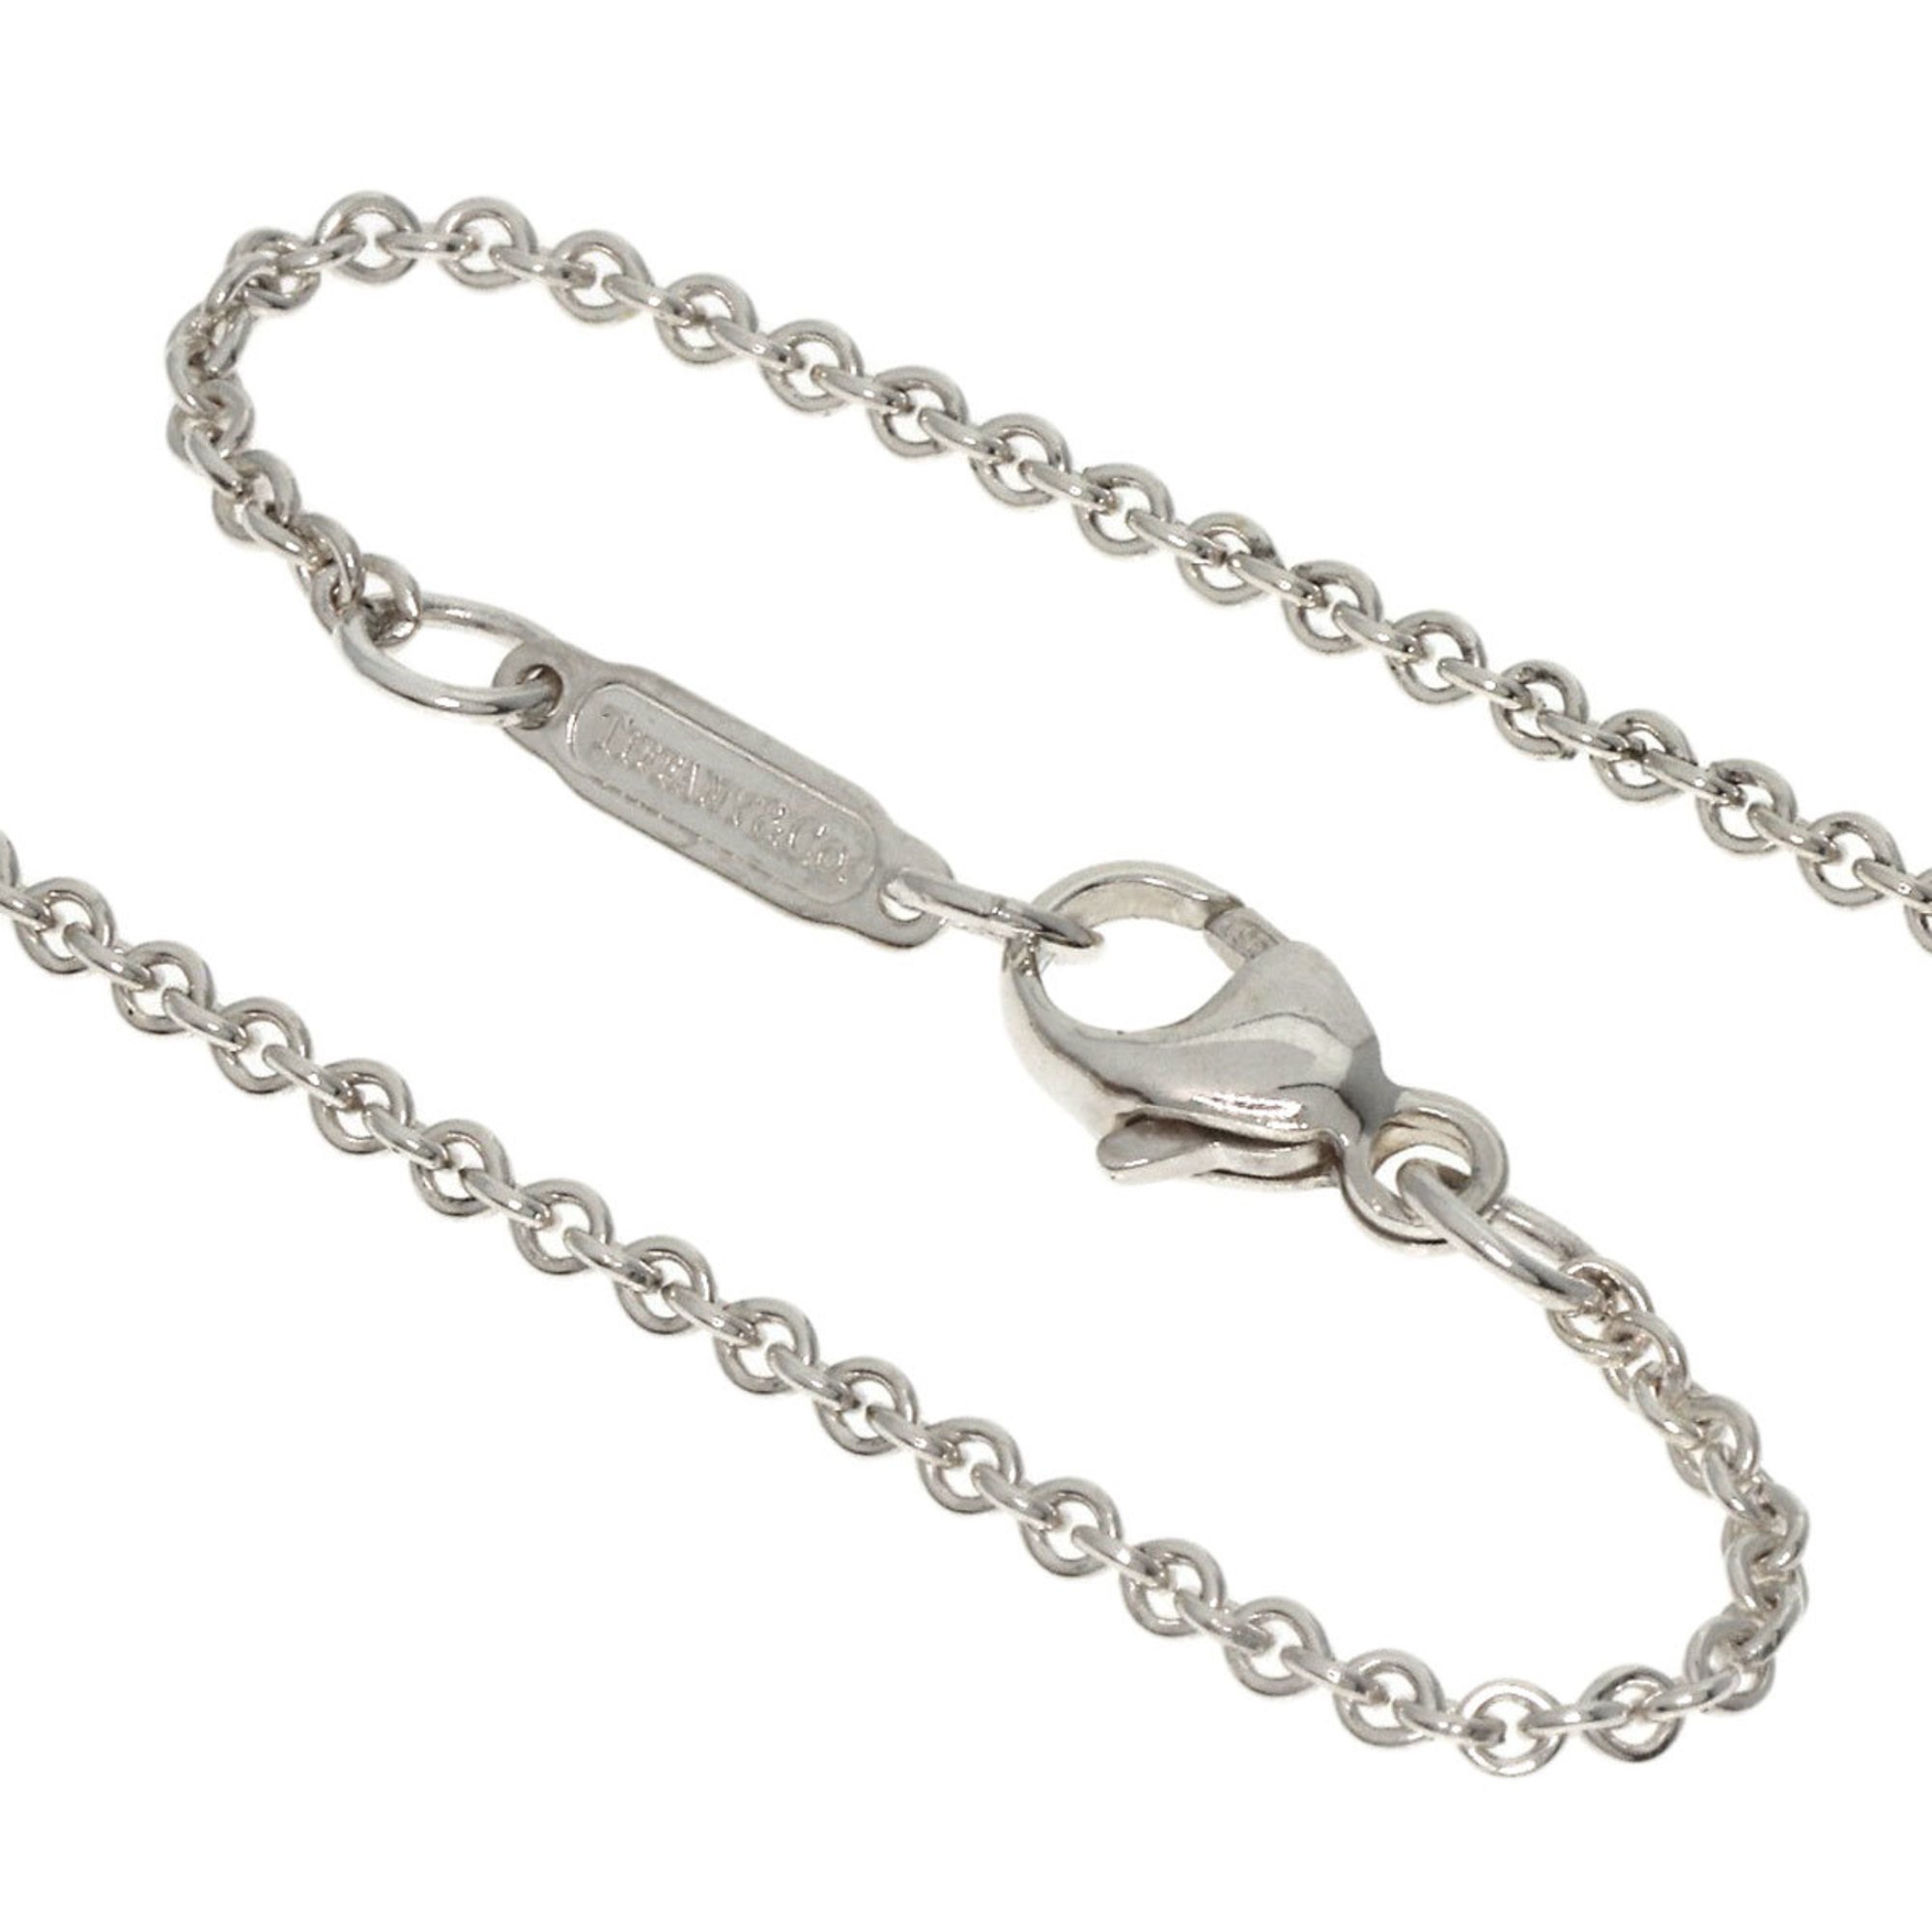 Tiffany Cadena Lock Necklace Silver Women's